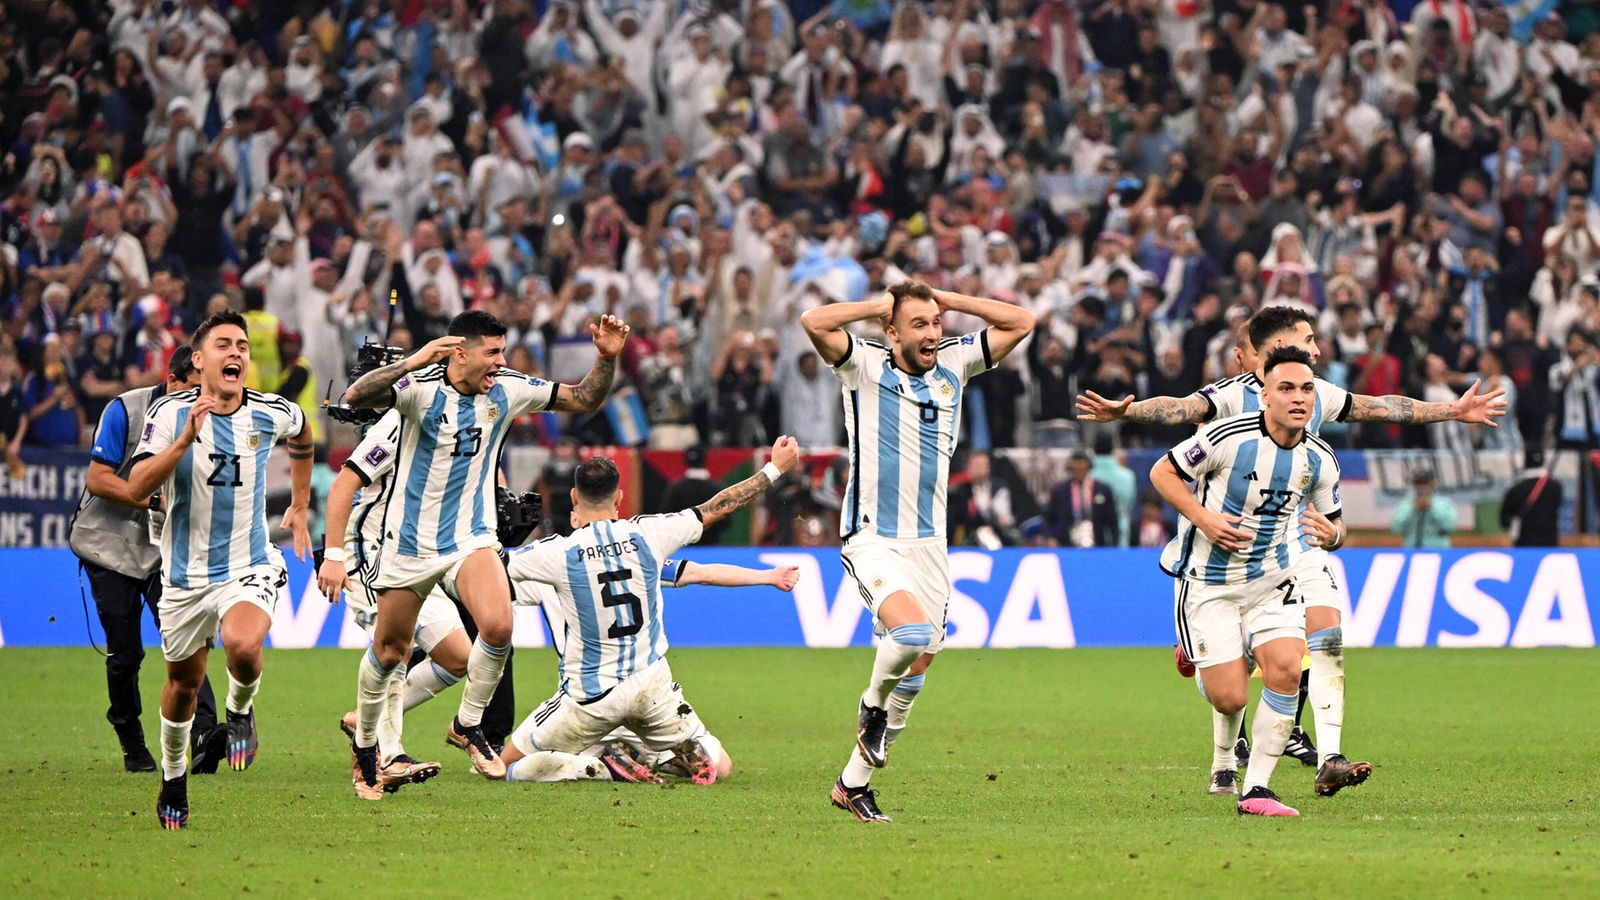 Drame des pénalités: l’Argentine est championne du monde de football – actualités – WDR – actualités